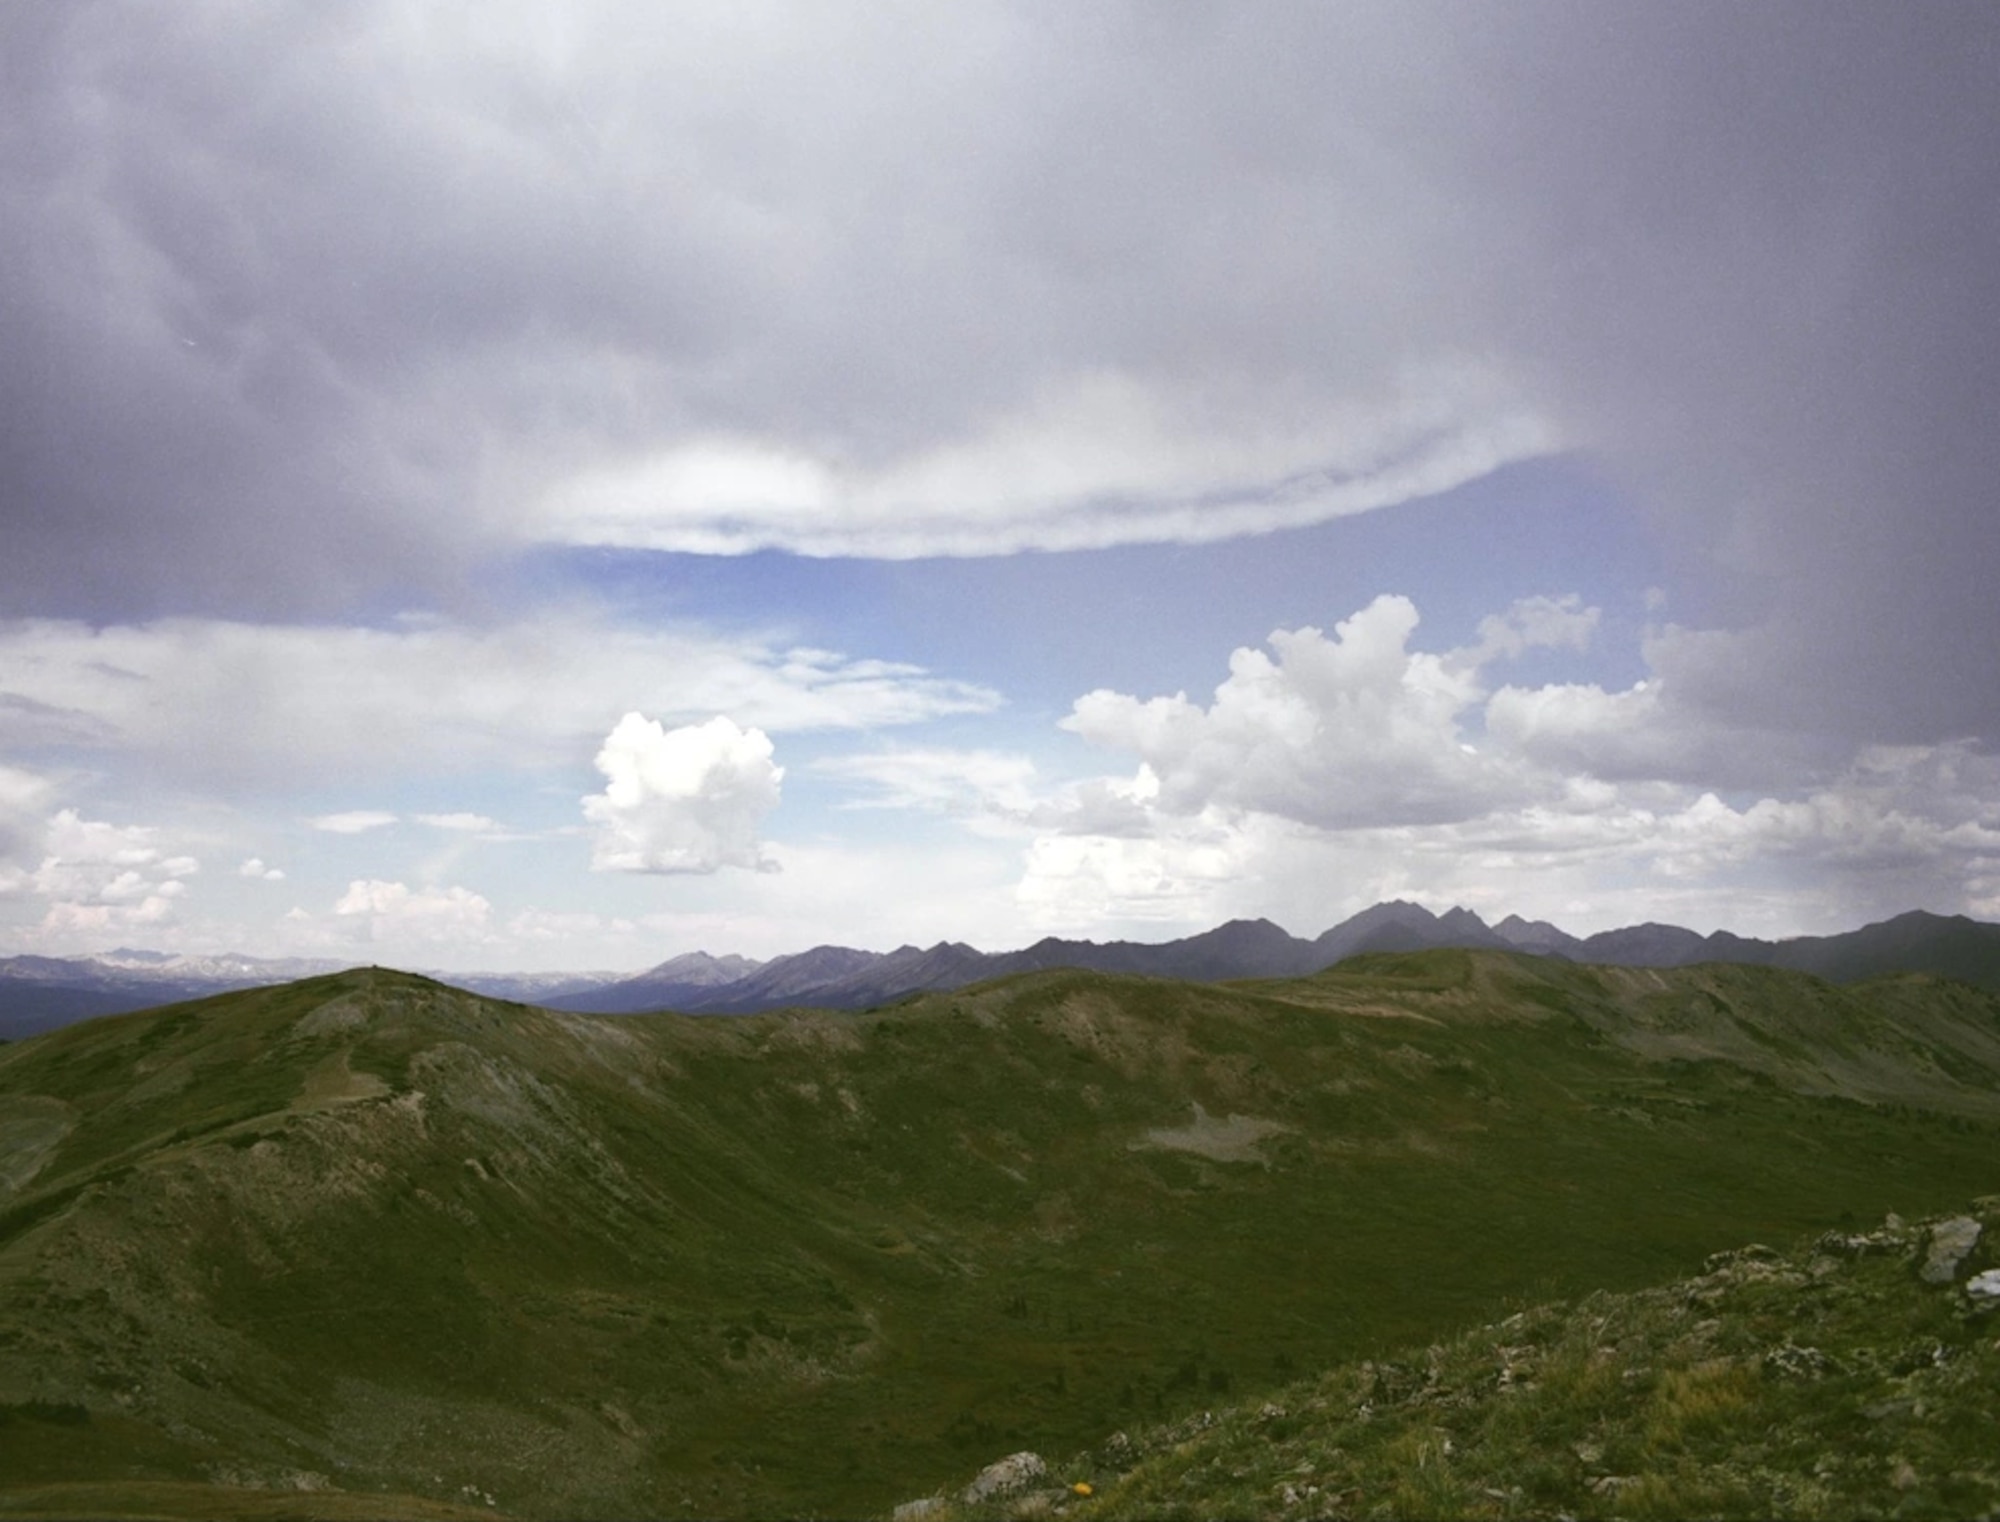 The Rocky Mountains in Colorado. (Courtesy photo / NASA)